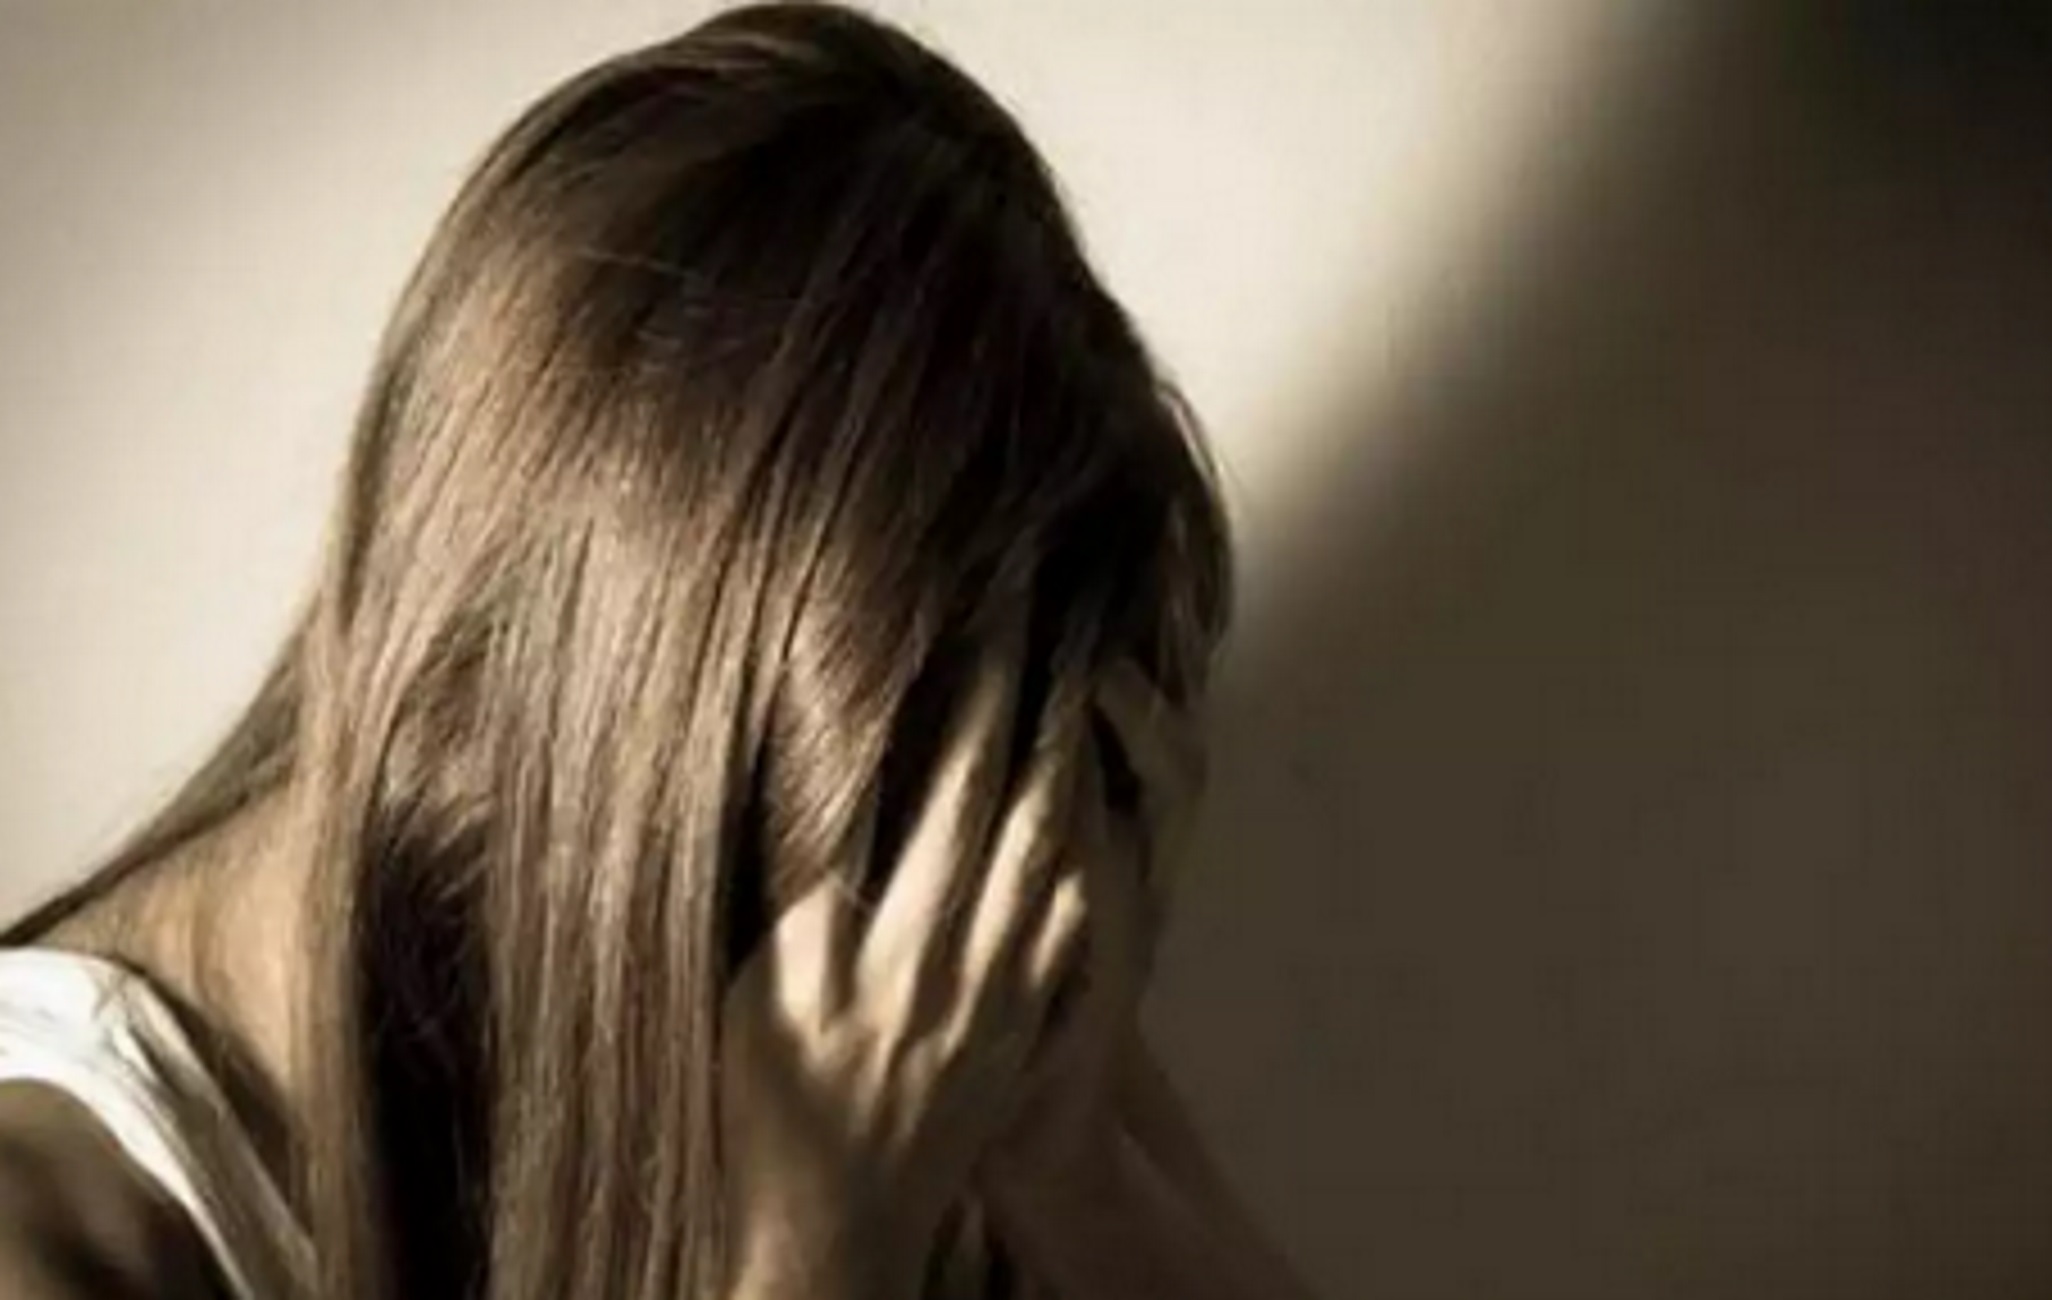 Κάλυμνος: Καταγγελία φρίκης από 13χρονο κορίτσι – «Ασελγούσε πάνω μου και η μαμά γνώριζε τα πάντα»